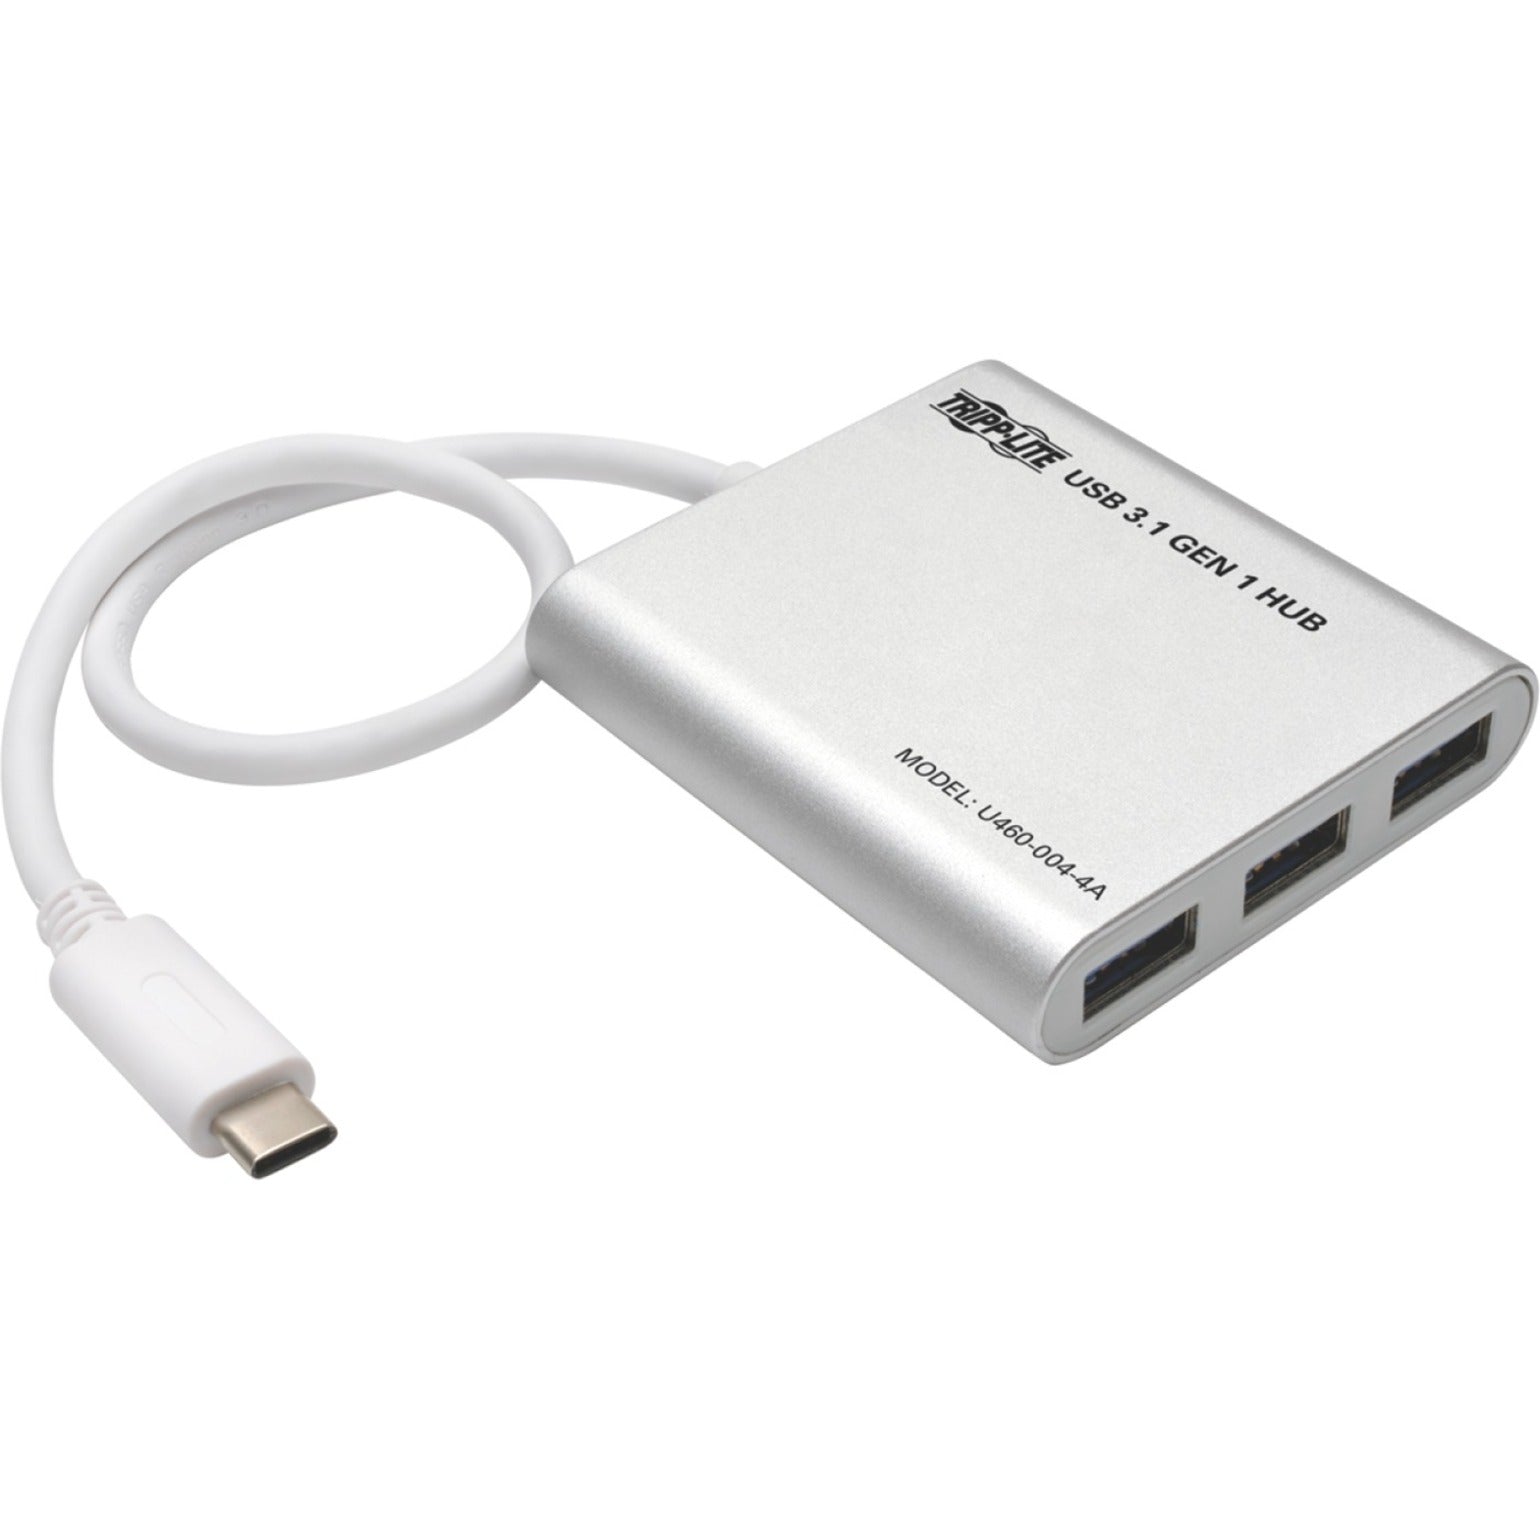 Tripp Lite U460-004-4A 4-Poort Draagbare USB 3.1 Gen 1 Hub Aluminium 3 Jaar Garantie RoHS Gecertificeerd